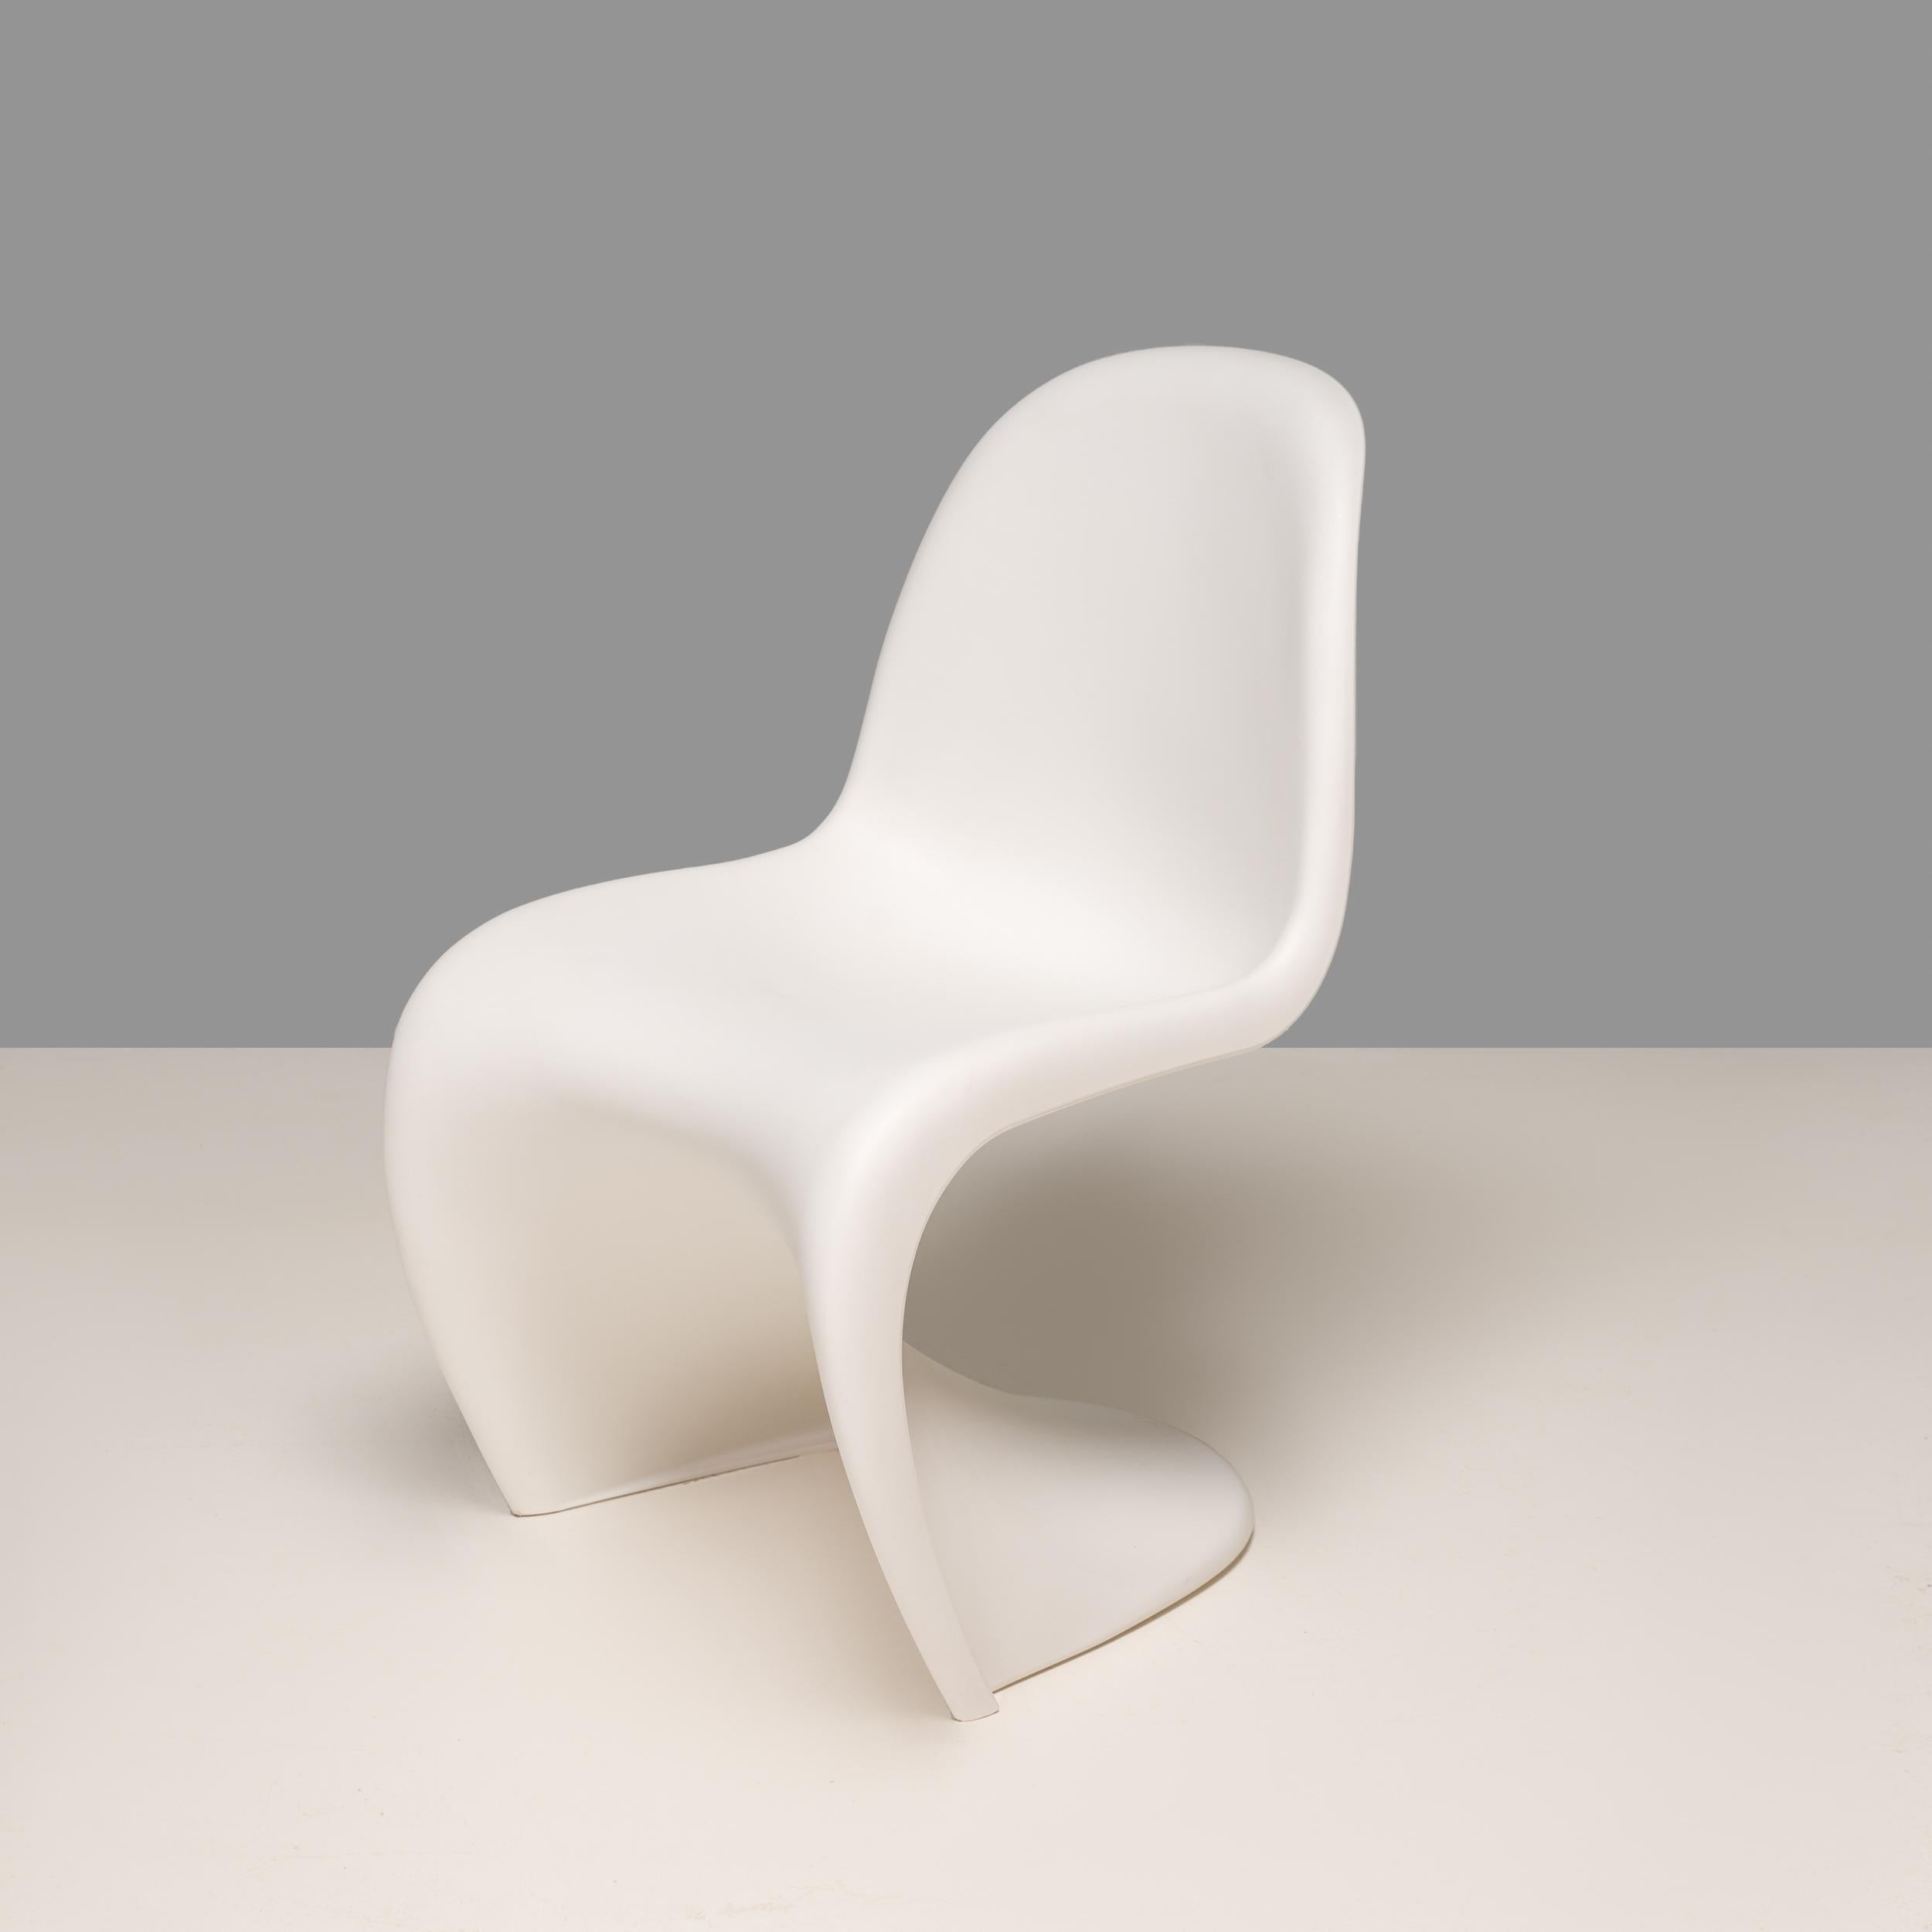 La chaise Panton a été conçue par Verner Panton en 1960 et développée pour la production avec Vitra en 1967. Elle est entrée dans l'histoire en tant que première chaise fabriquée en une seule pièce à partir de plastique.

L'itération la plus récente